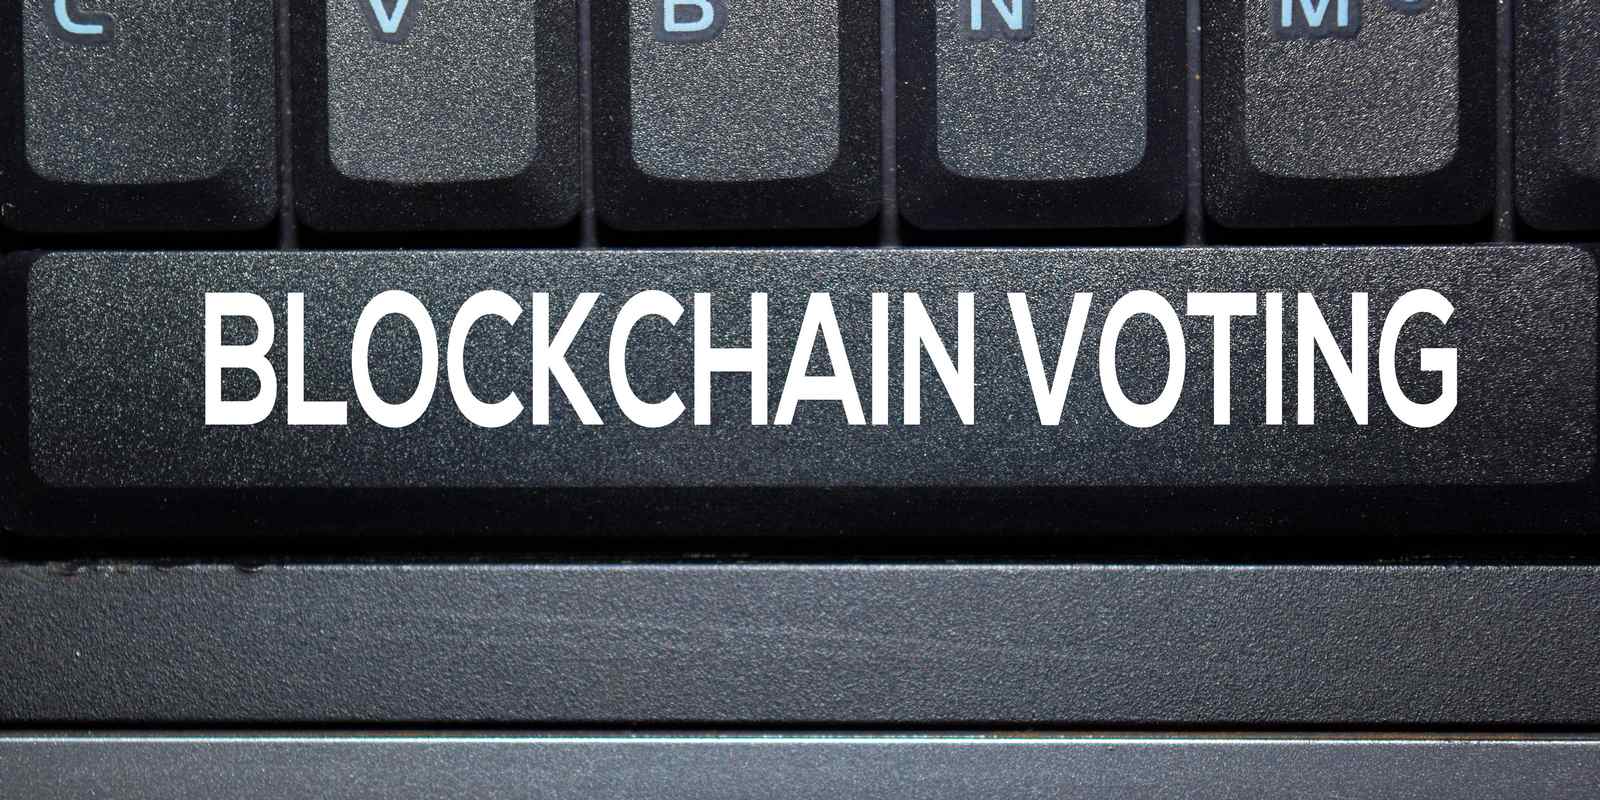 Vote blockchain : plutôt une mauvaise idée, selon des chercheurs du MIT